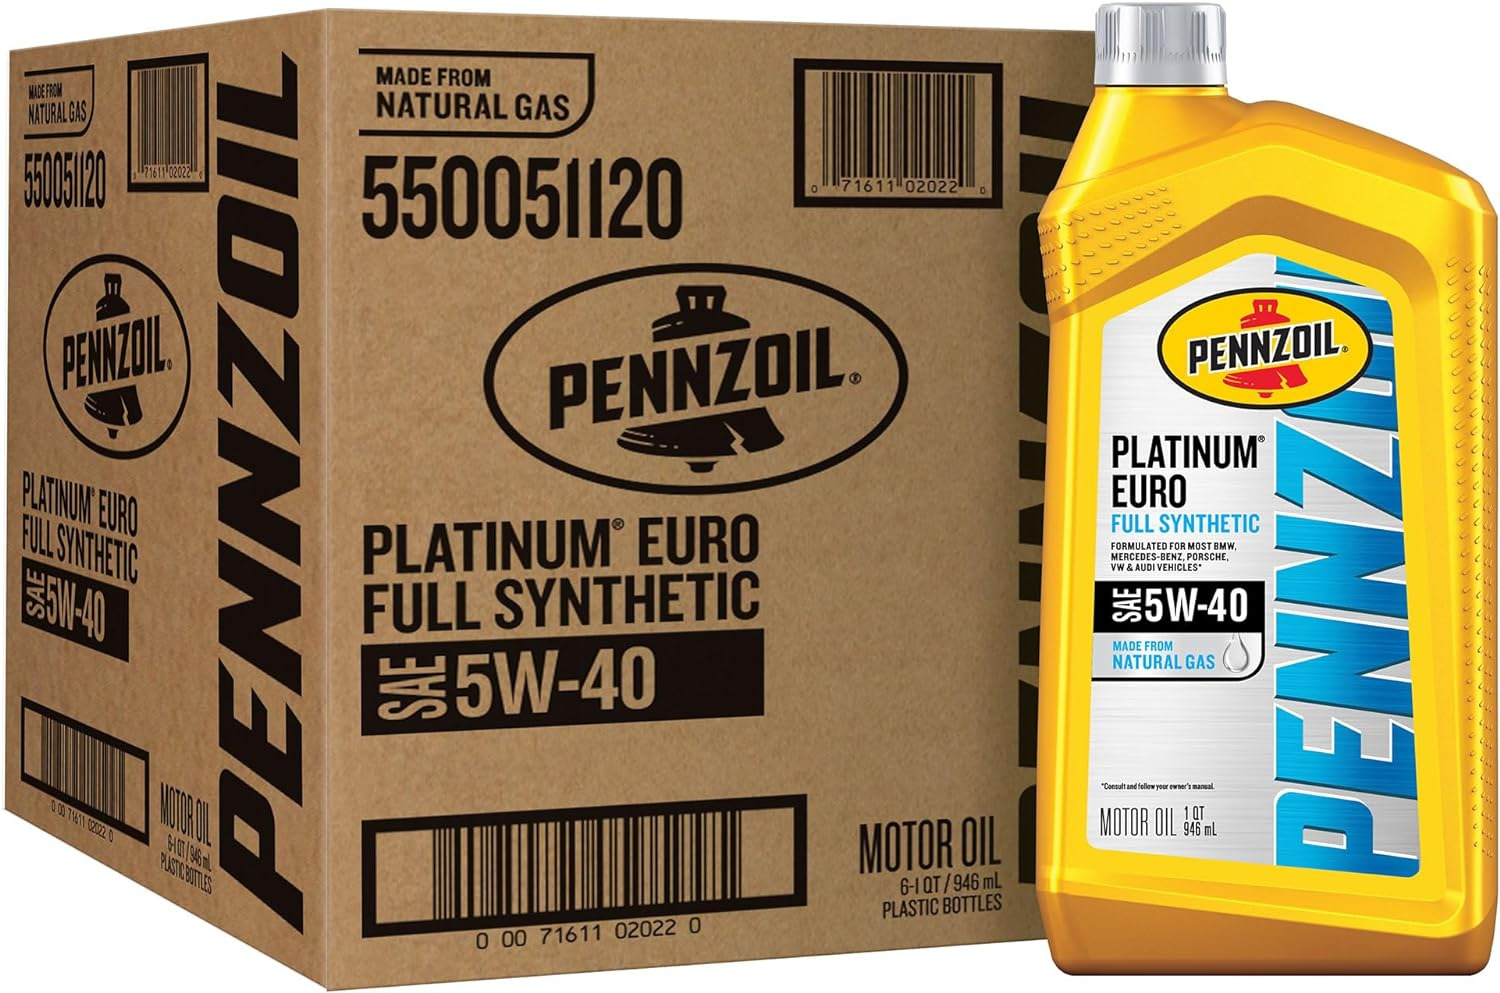 Pennzoil Platinum Euro Full Synthetic 5W-40 Motor Oil, Pack of 6